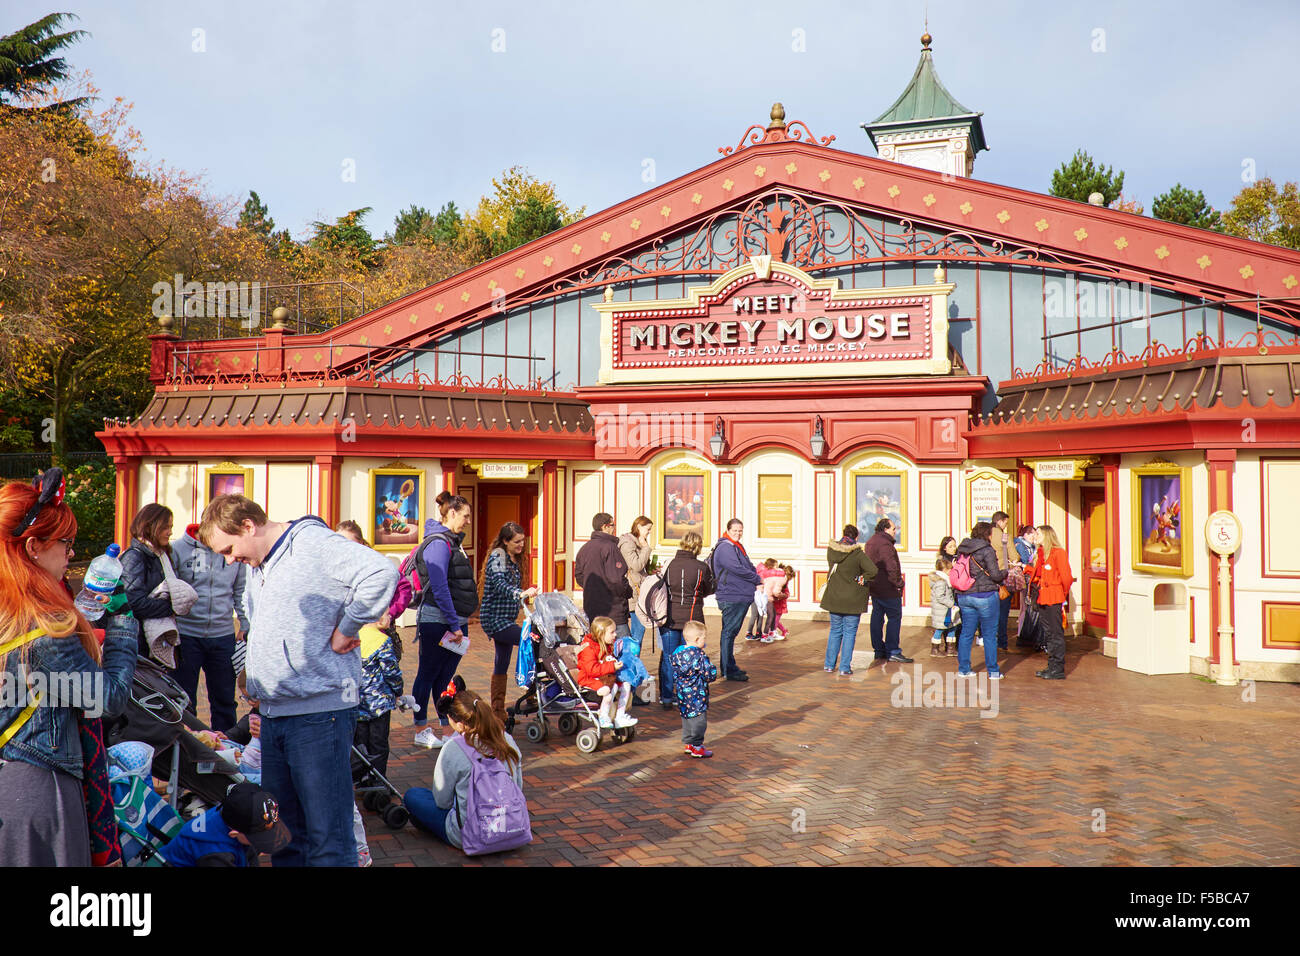 Les gens faisant la queue pour voir la souris de Mickey dans Fantasyland Disneyland Paris Marne-la-Vallée Chessy France Banque D'Images